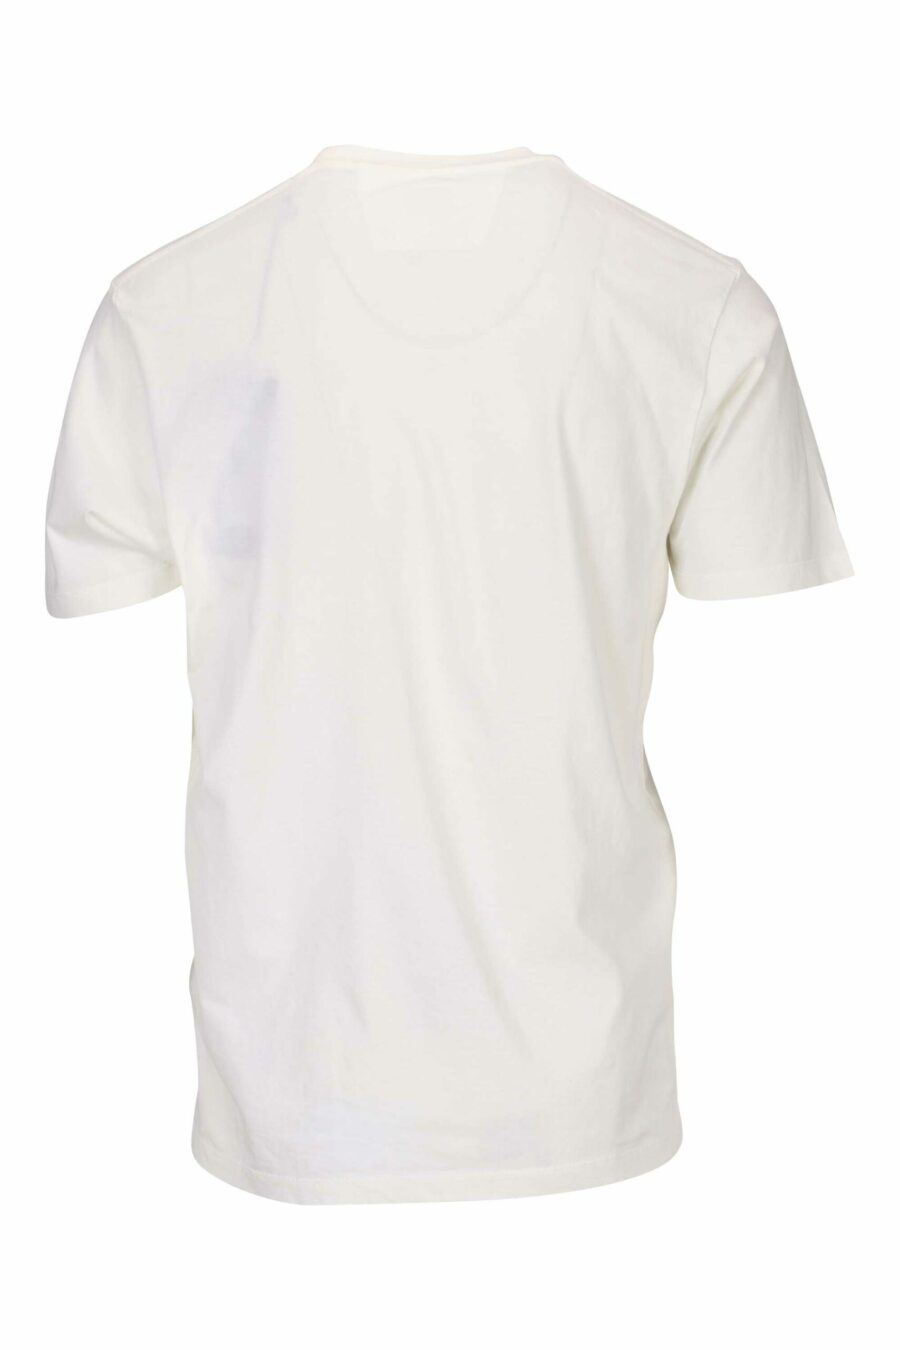 Camiseta blanca con marinero borroso - 7620943601091 1 scaled